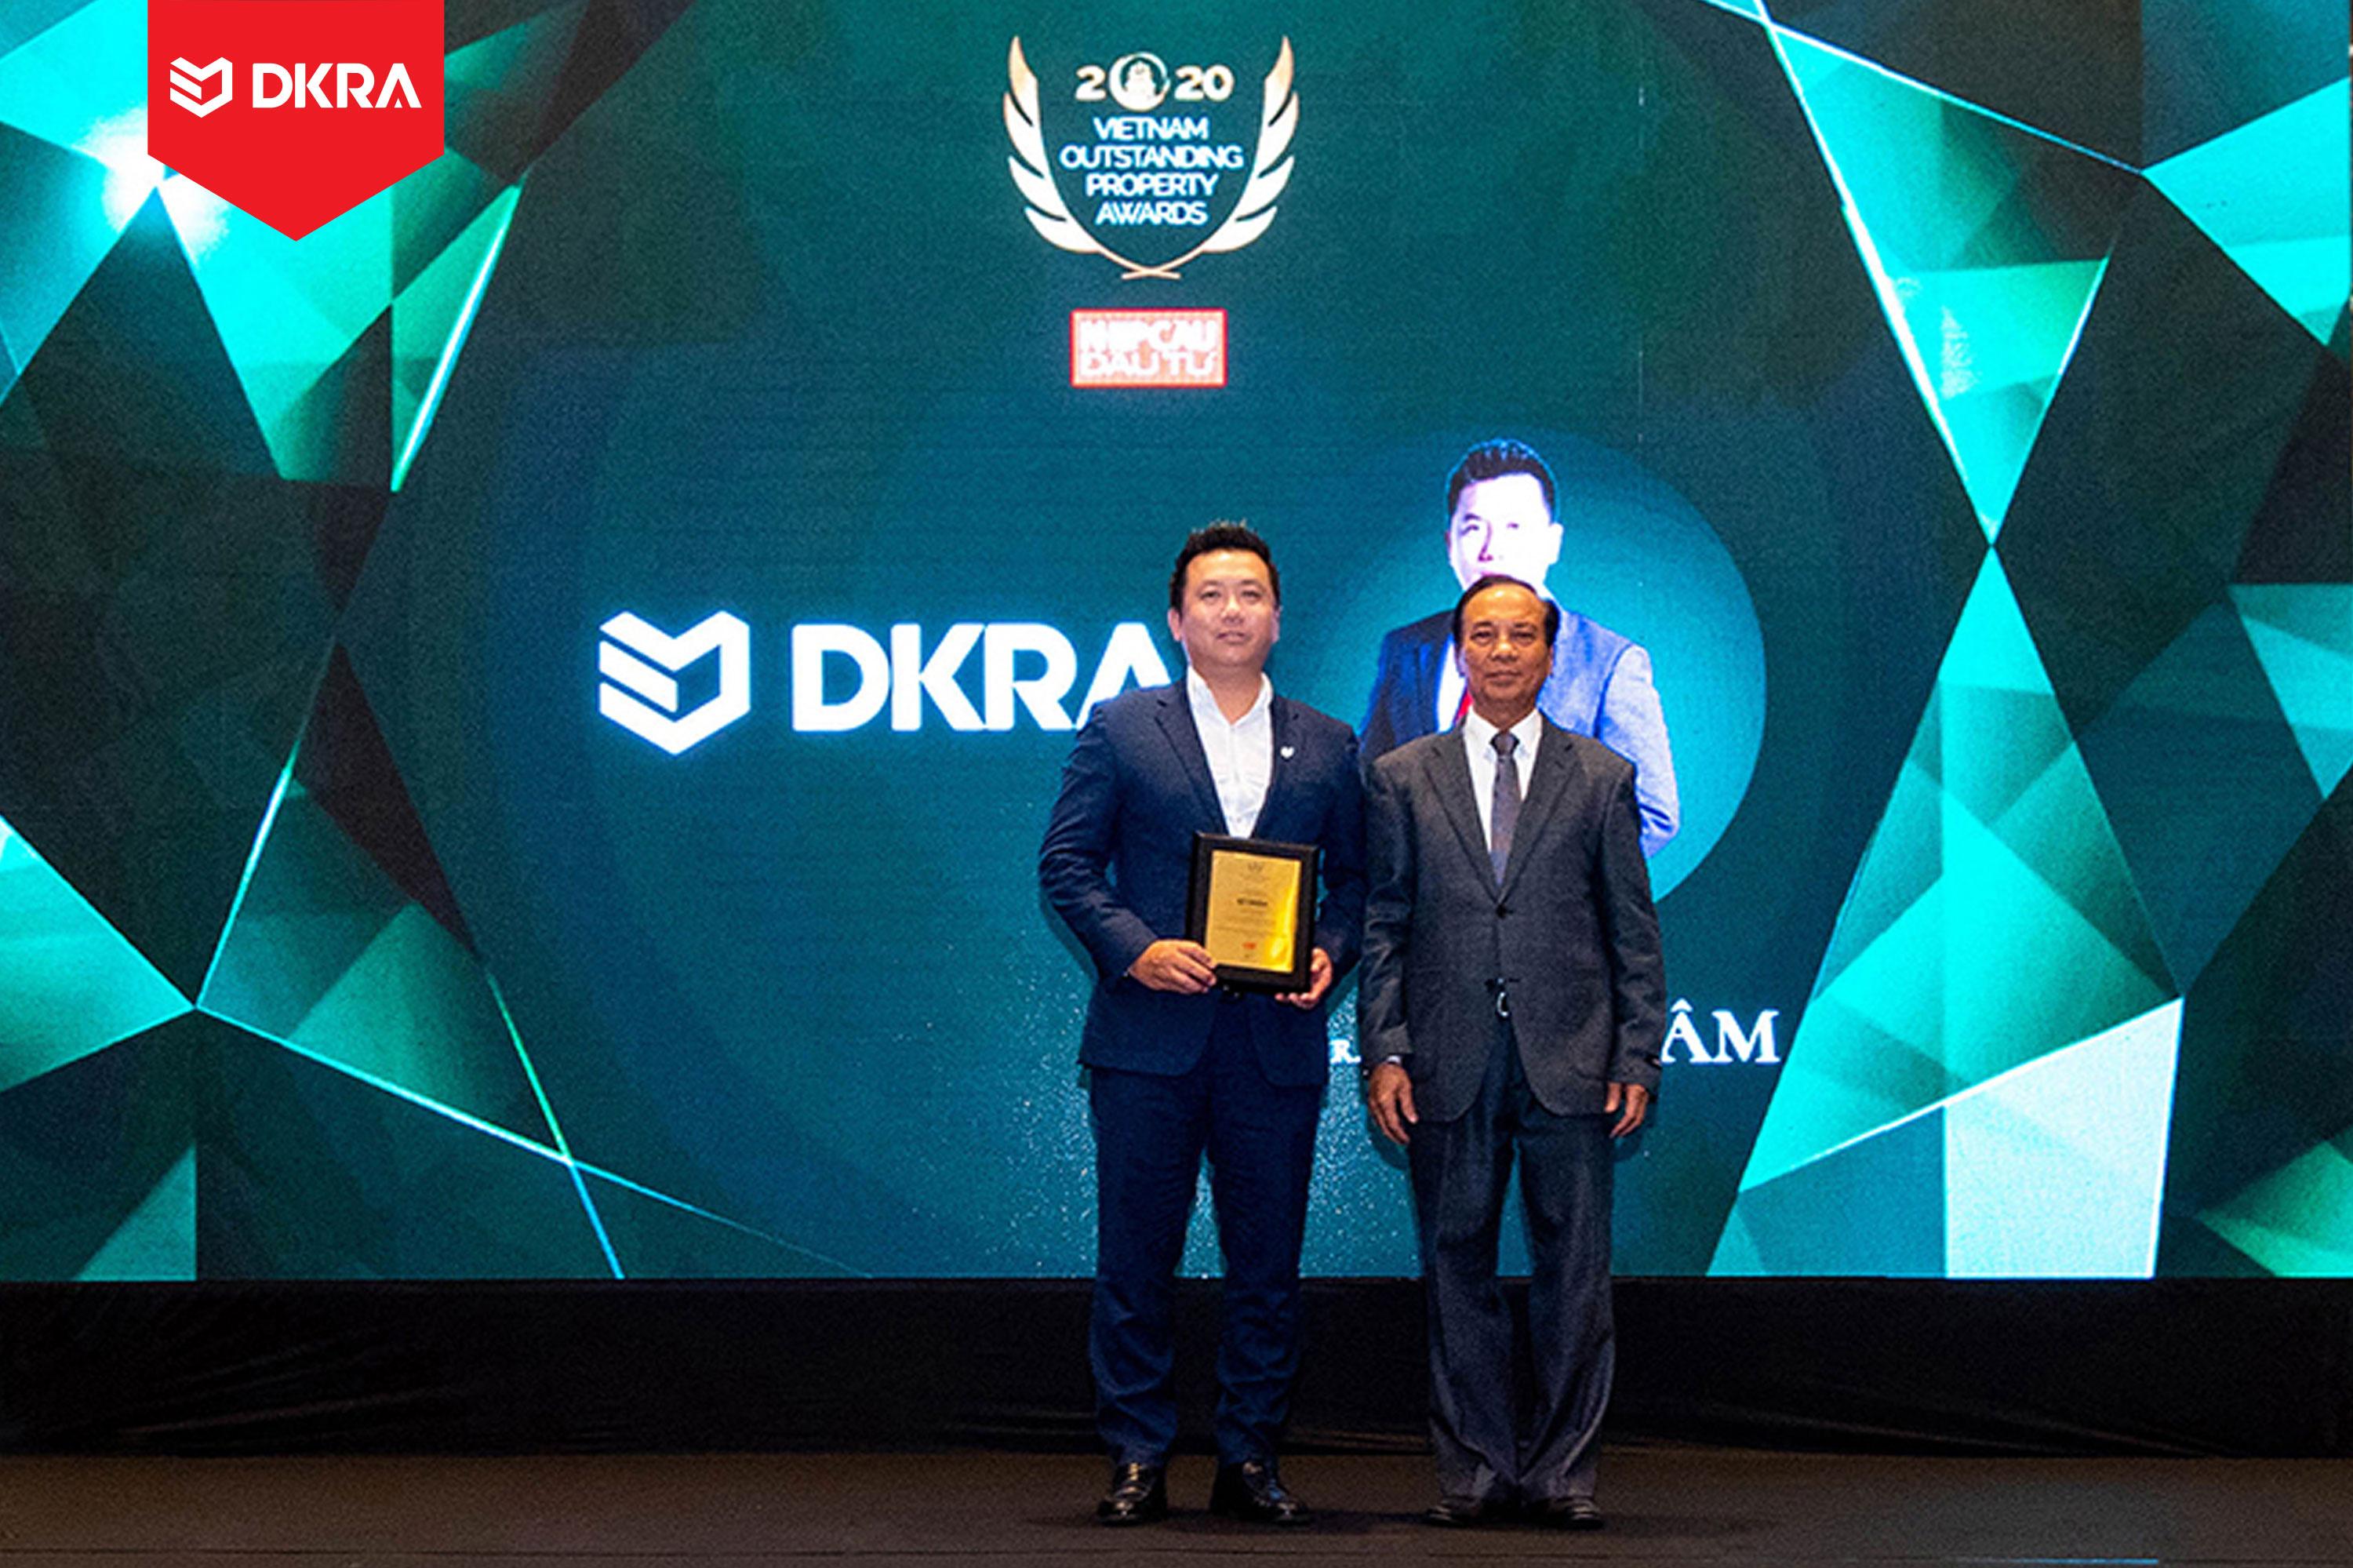 DKRA Group Ông Phạm Lâm - CEO DKRA Vietnam được vinh danh “Doanh nhân Bất động sản ấn tượng” do tạp chí Nhịp cầu đầu tư trao tặng năm 2020